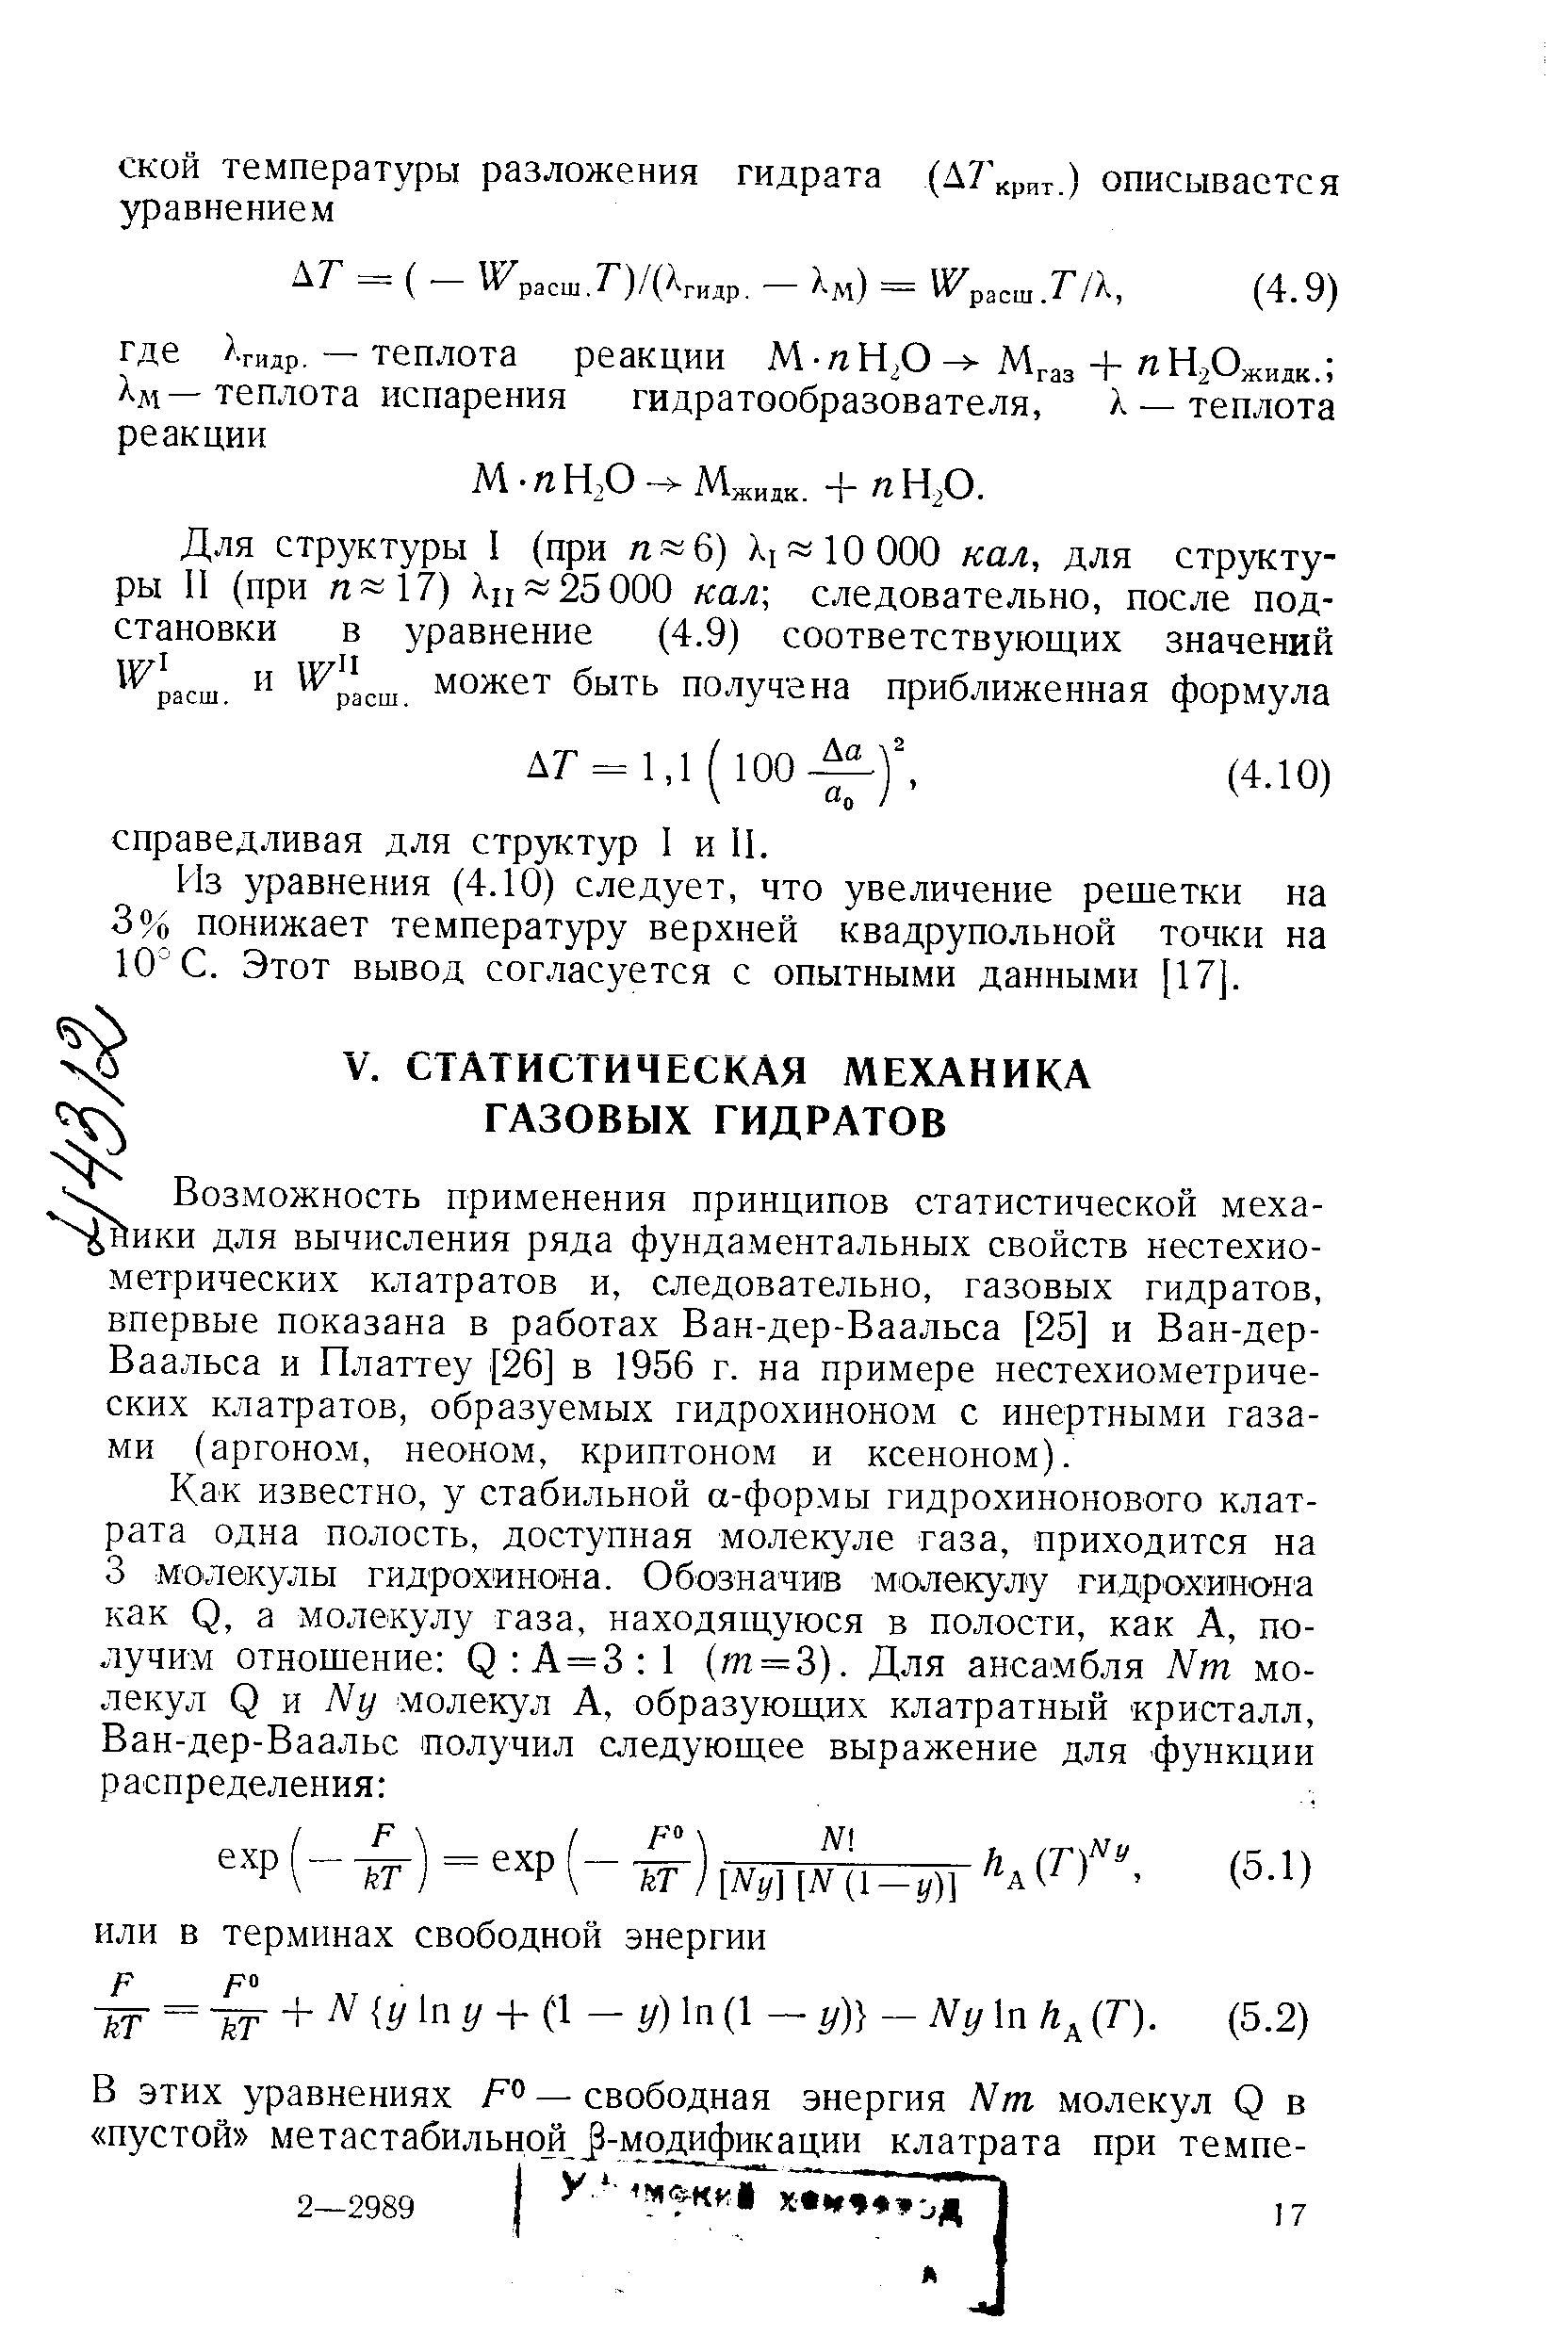 здожность применения принципов статистической меха-ики для вычисления ряда фундаментальных свойств нестехиометрических клатратов и, следовательно, газовых гидратов, впервые показана в работах Ван-дер-Ваальса [25] и Ван-дер-Ваальса и Платтеу [26] в 1956 г. на примере нестехиометрических клатратов, образуемых гидрохиноном с инертными газами (аргоном, неоном, криптоном и ксеноном).